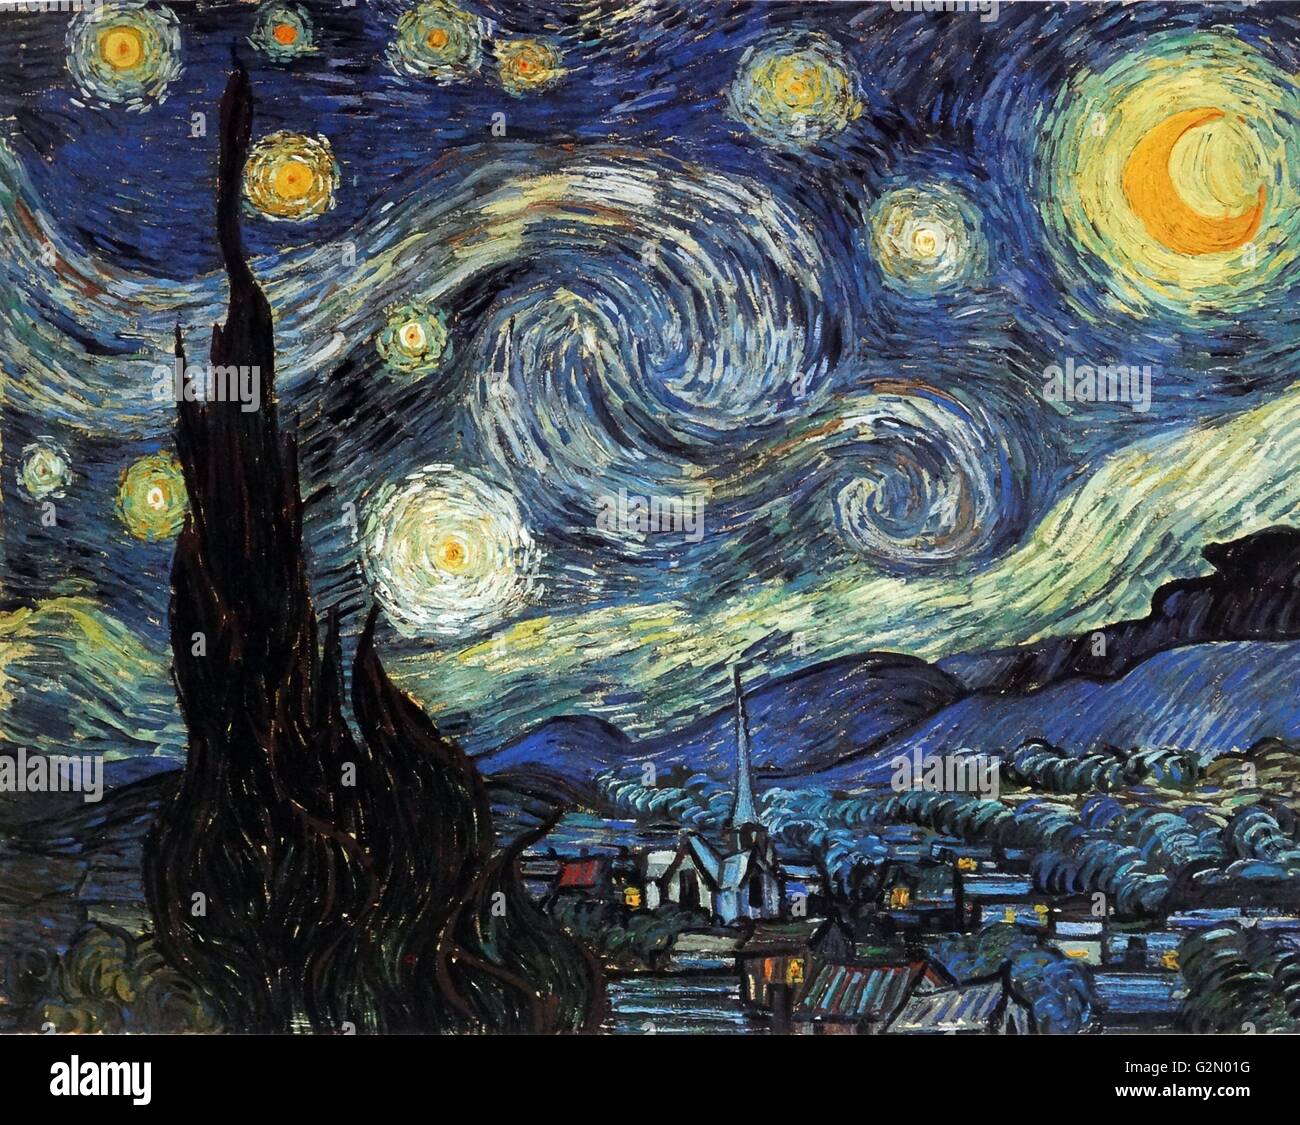 Peinture du célèbre peintre néerlandais Vincent Van Gogh (30 mars 1853 - 29 juillet 1890), l'œuvre intitulée 'La nuit étoilée'. Achevé en 1889. Banque D'Images